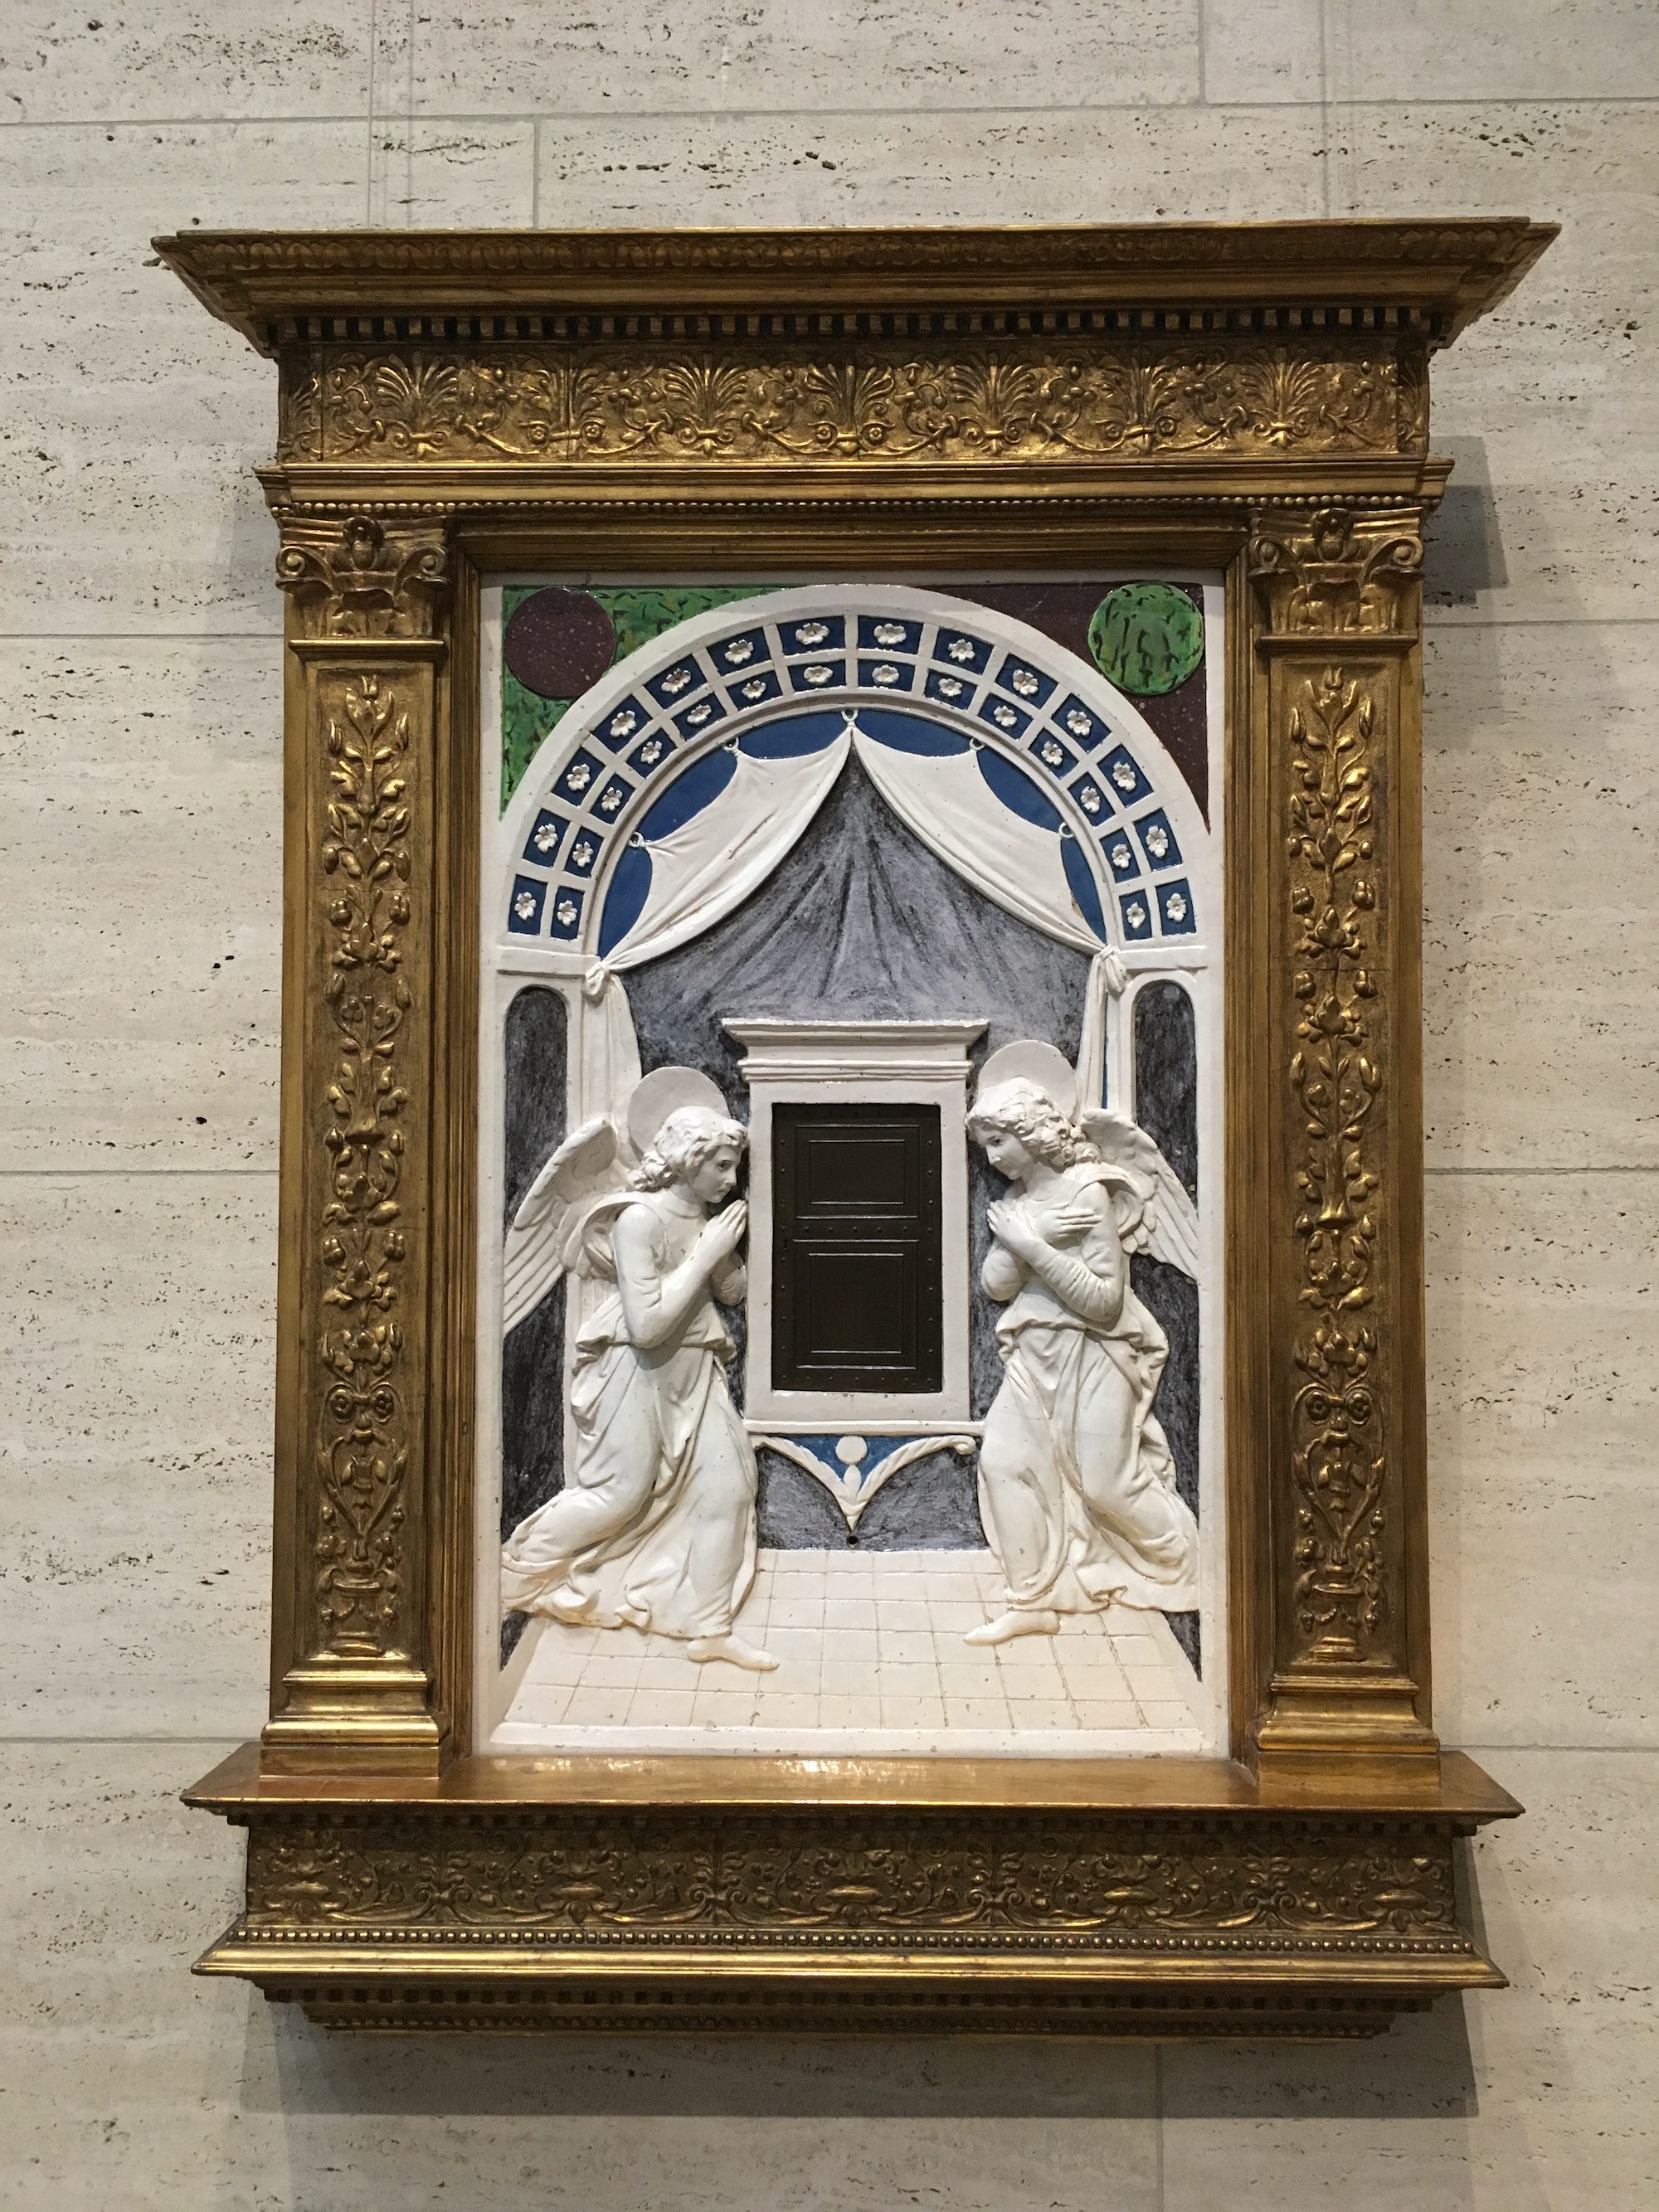 聖櫃 by Andrea della Robbia - 1470年頃 - 76.2 cm 